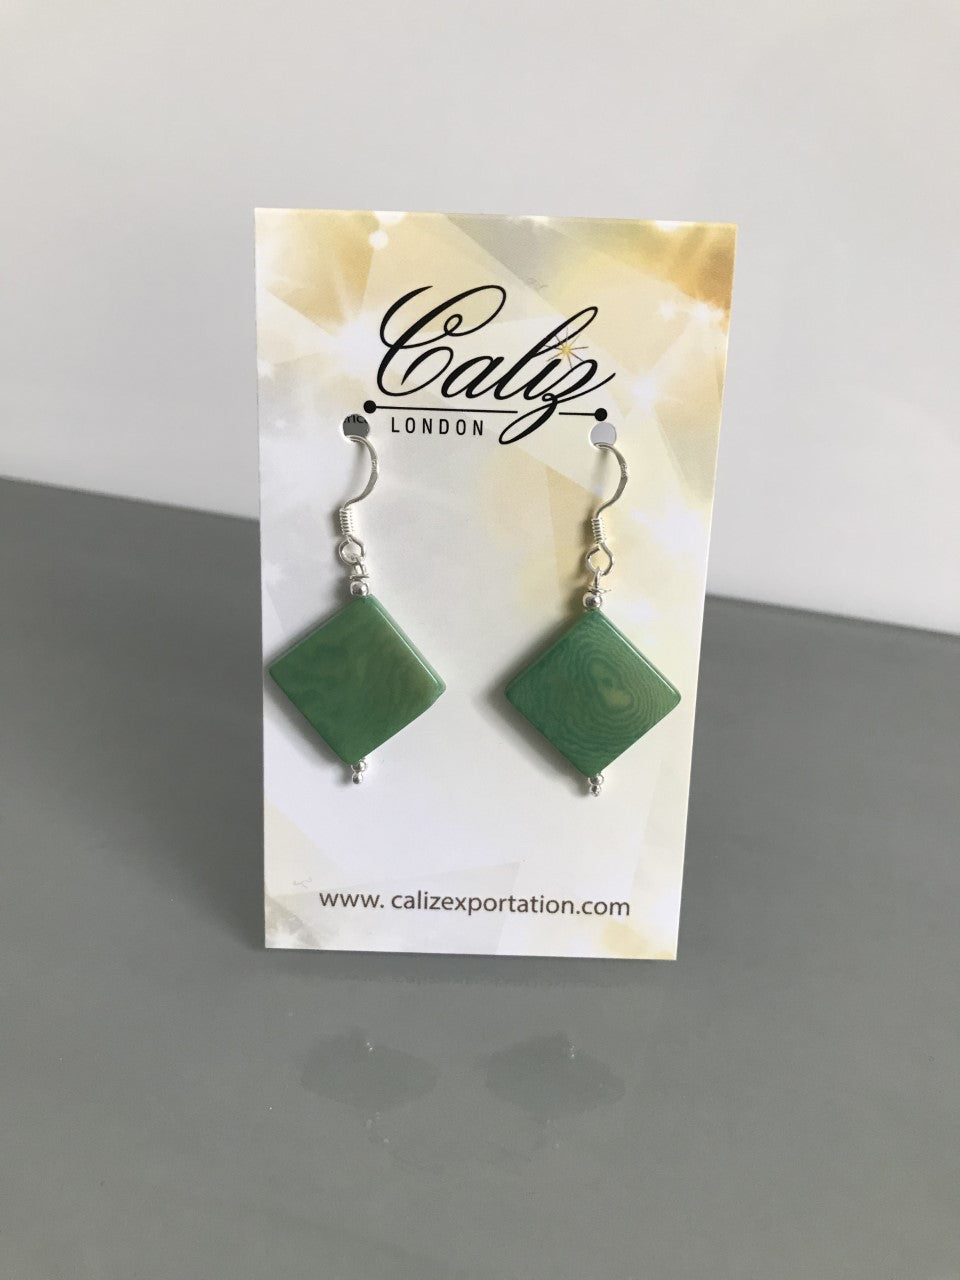 Diamante earrings (14mm) - Green Mint